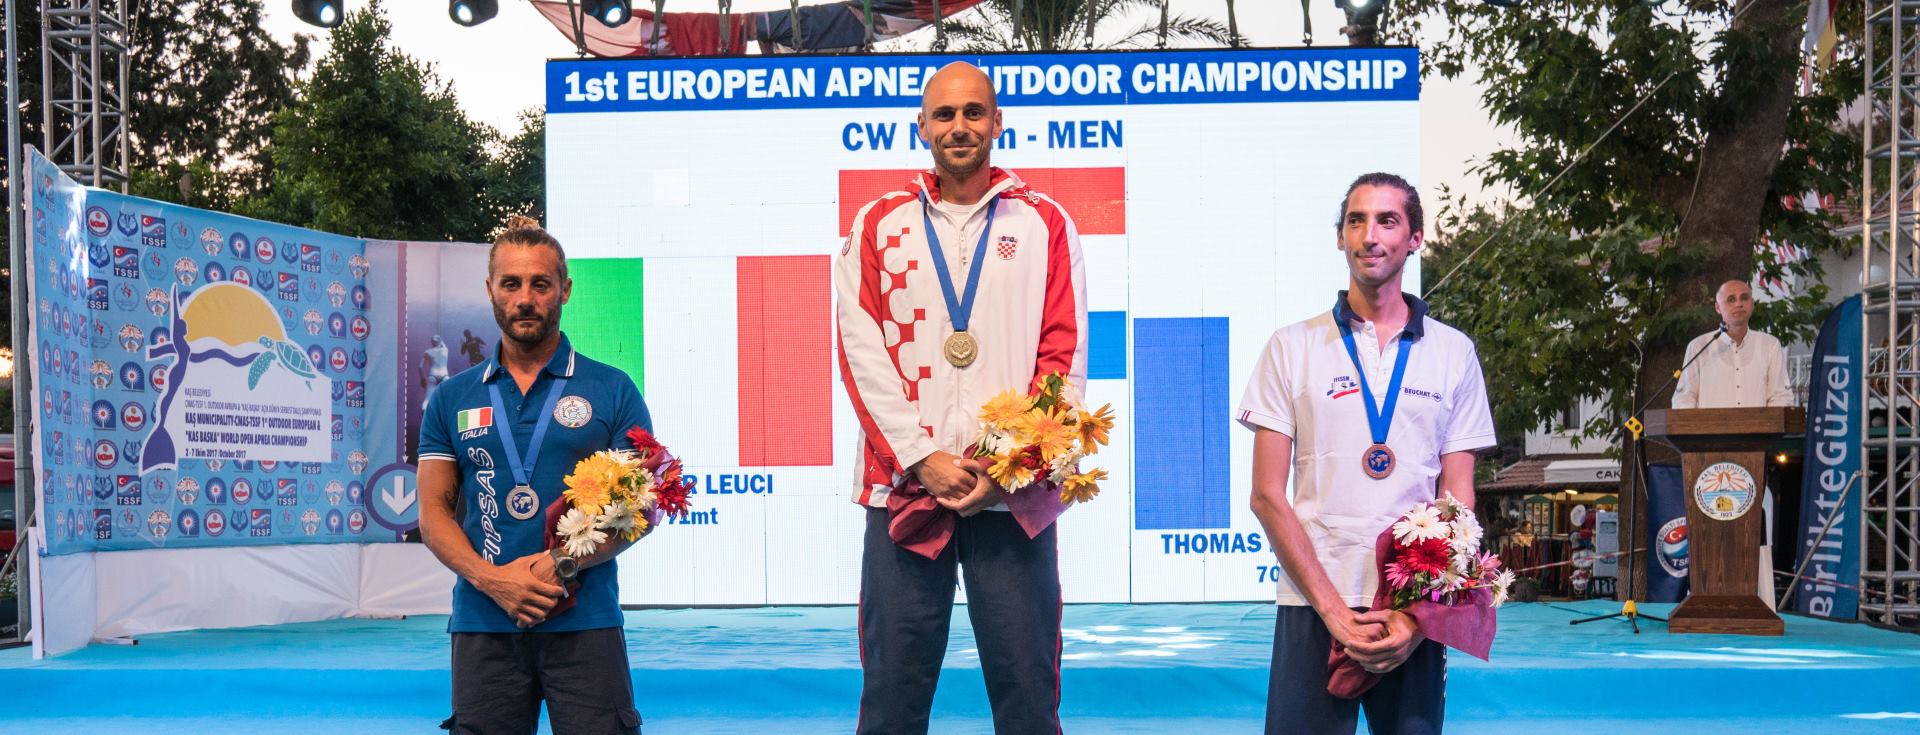 FOTO: Goran Čolak na Europskom dubinskom prvenstvu ponovo obara rekorde